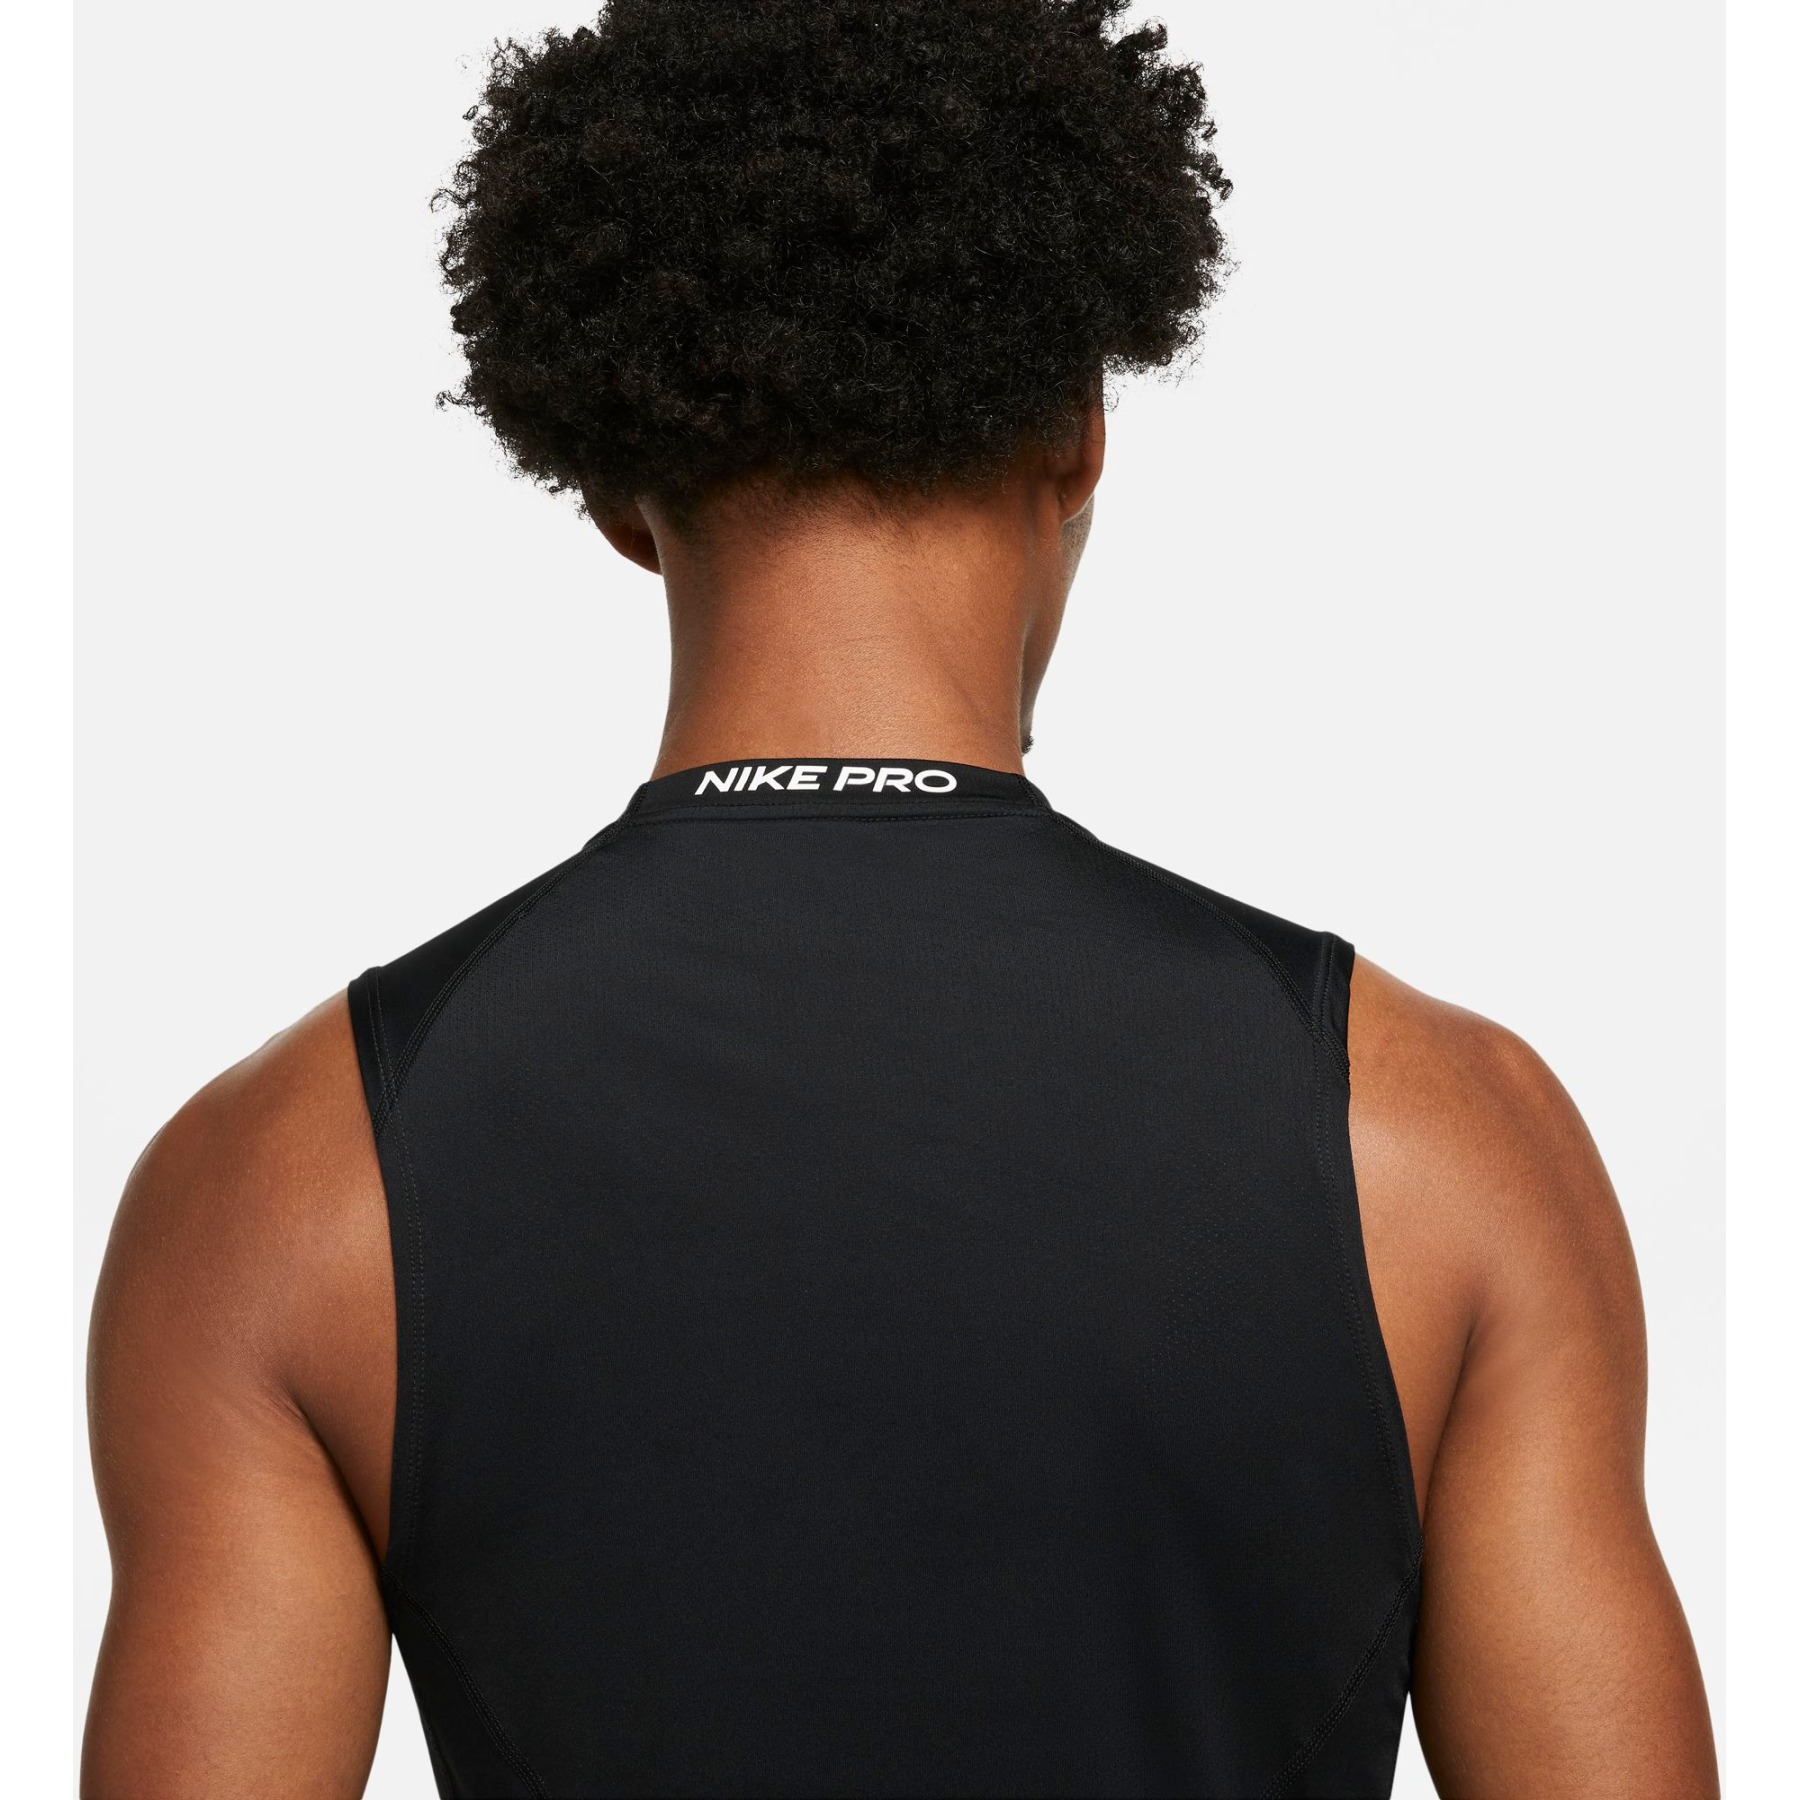 Nike Pro Dri-FIT Tight Fit Sleeveless Top Men - black/white DD1988-010